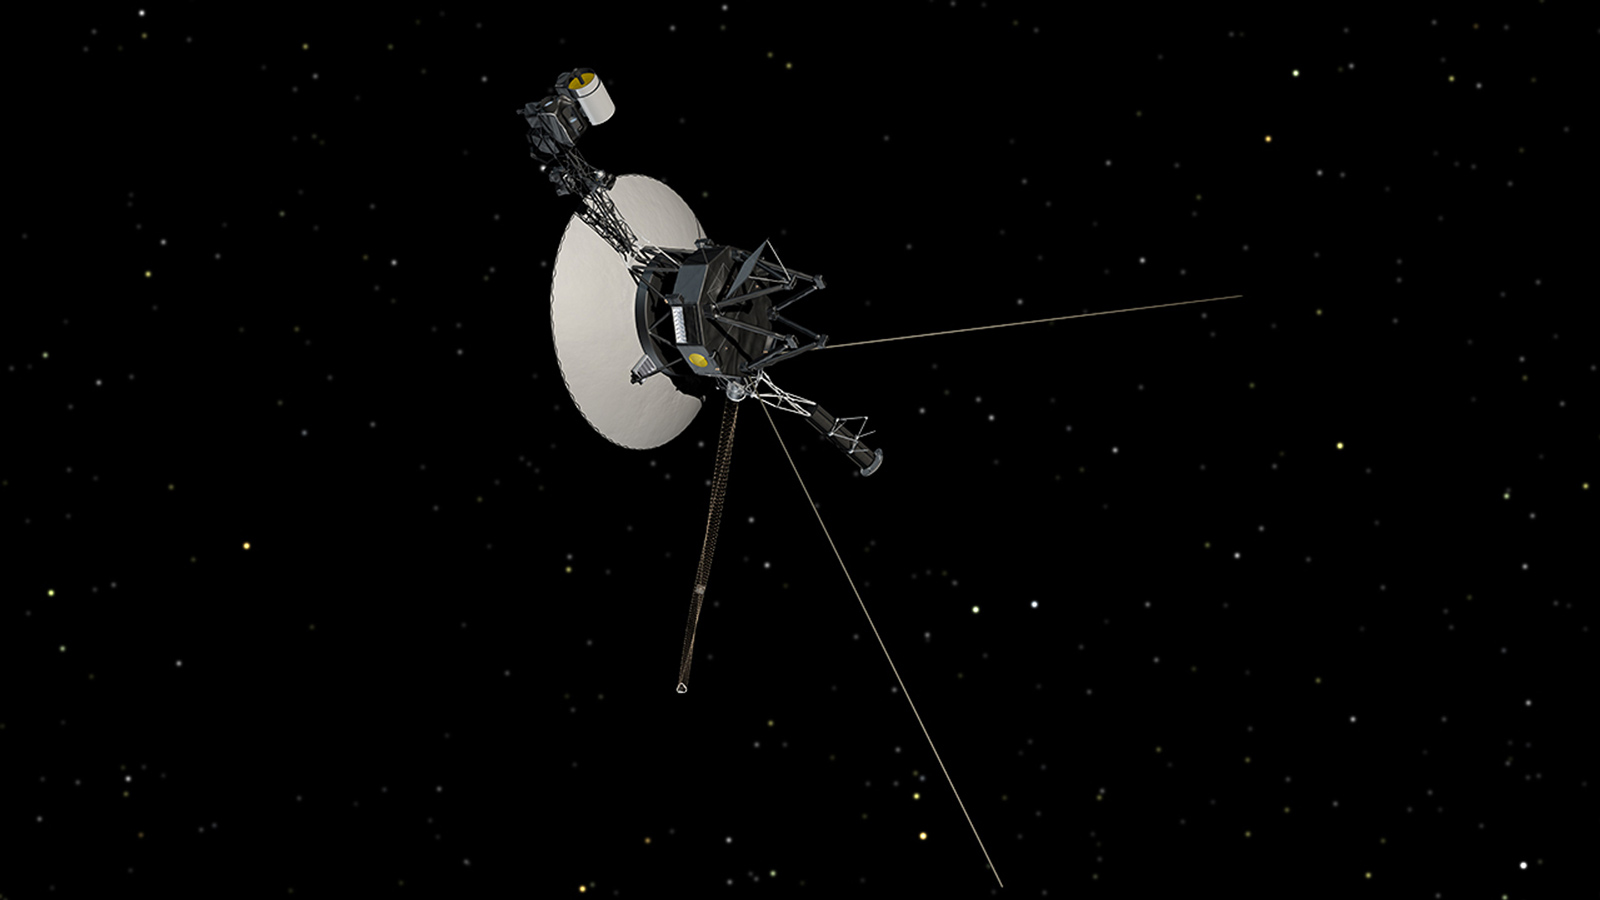 slide 3 - Illustration of Voyager in space